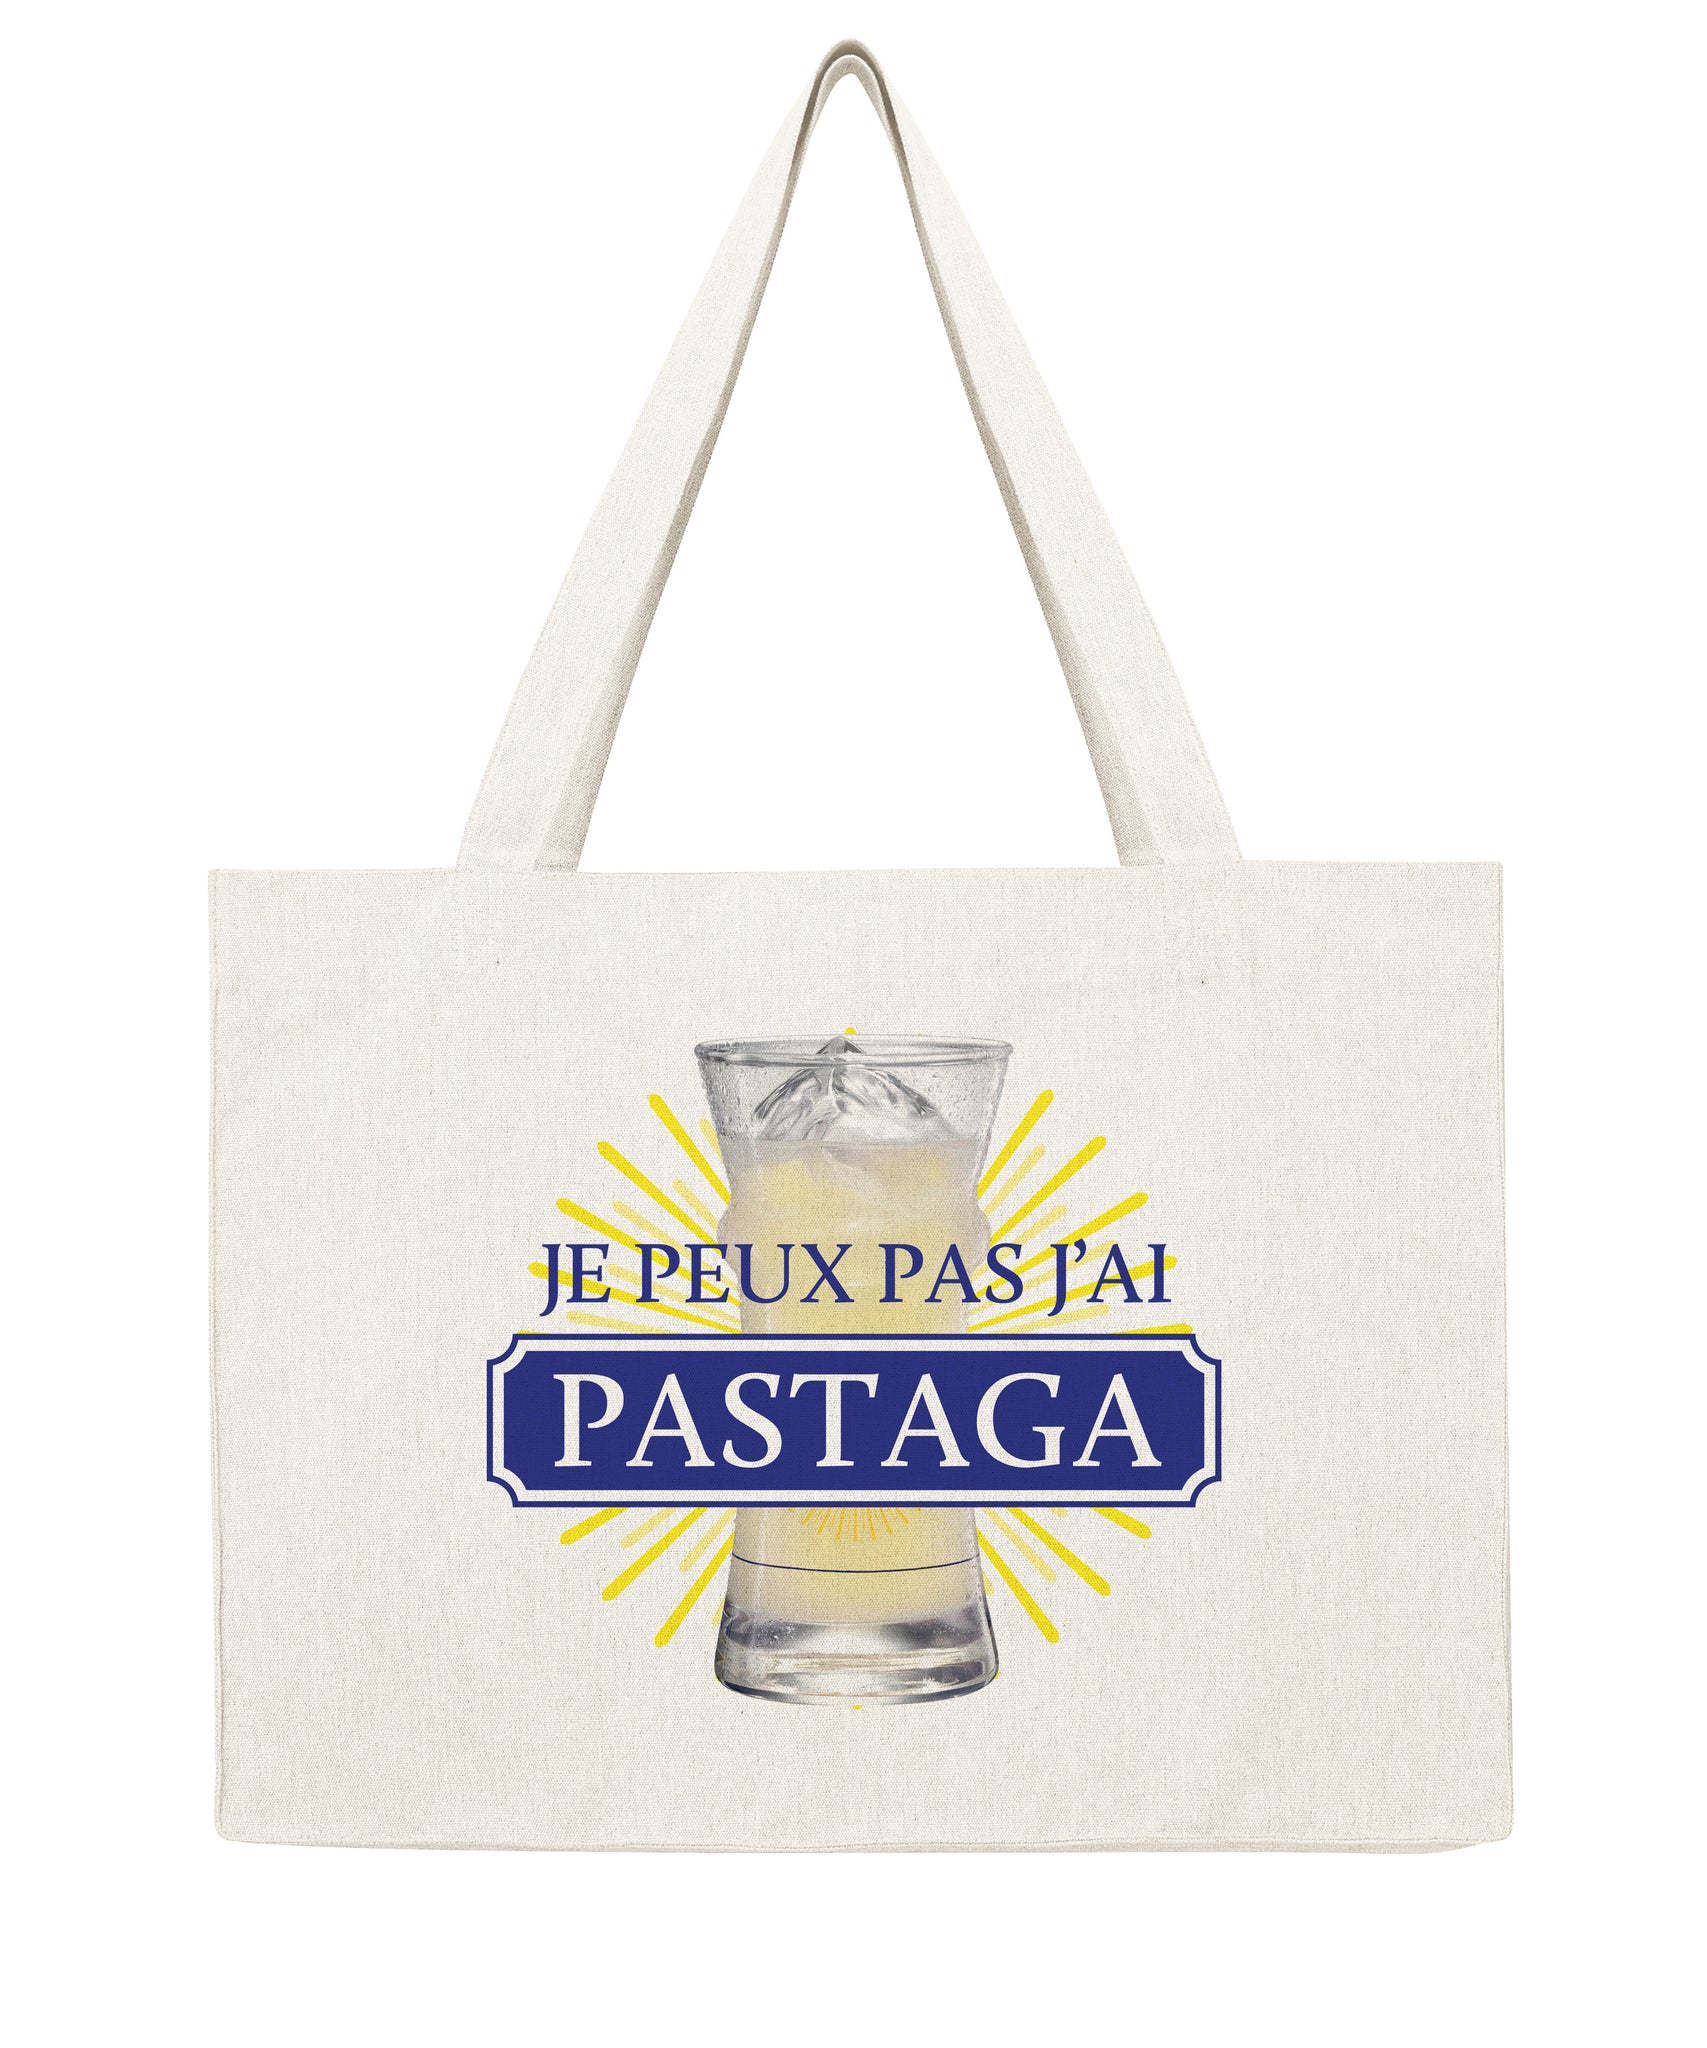 Je peux pas j'ai Pastaga - Shopping bag-Sacs-Atelier Amelot